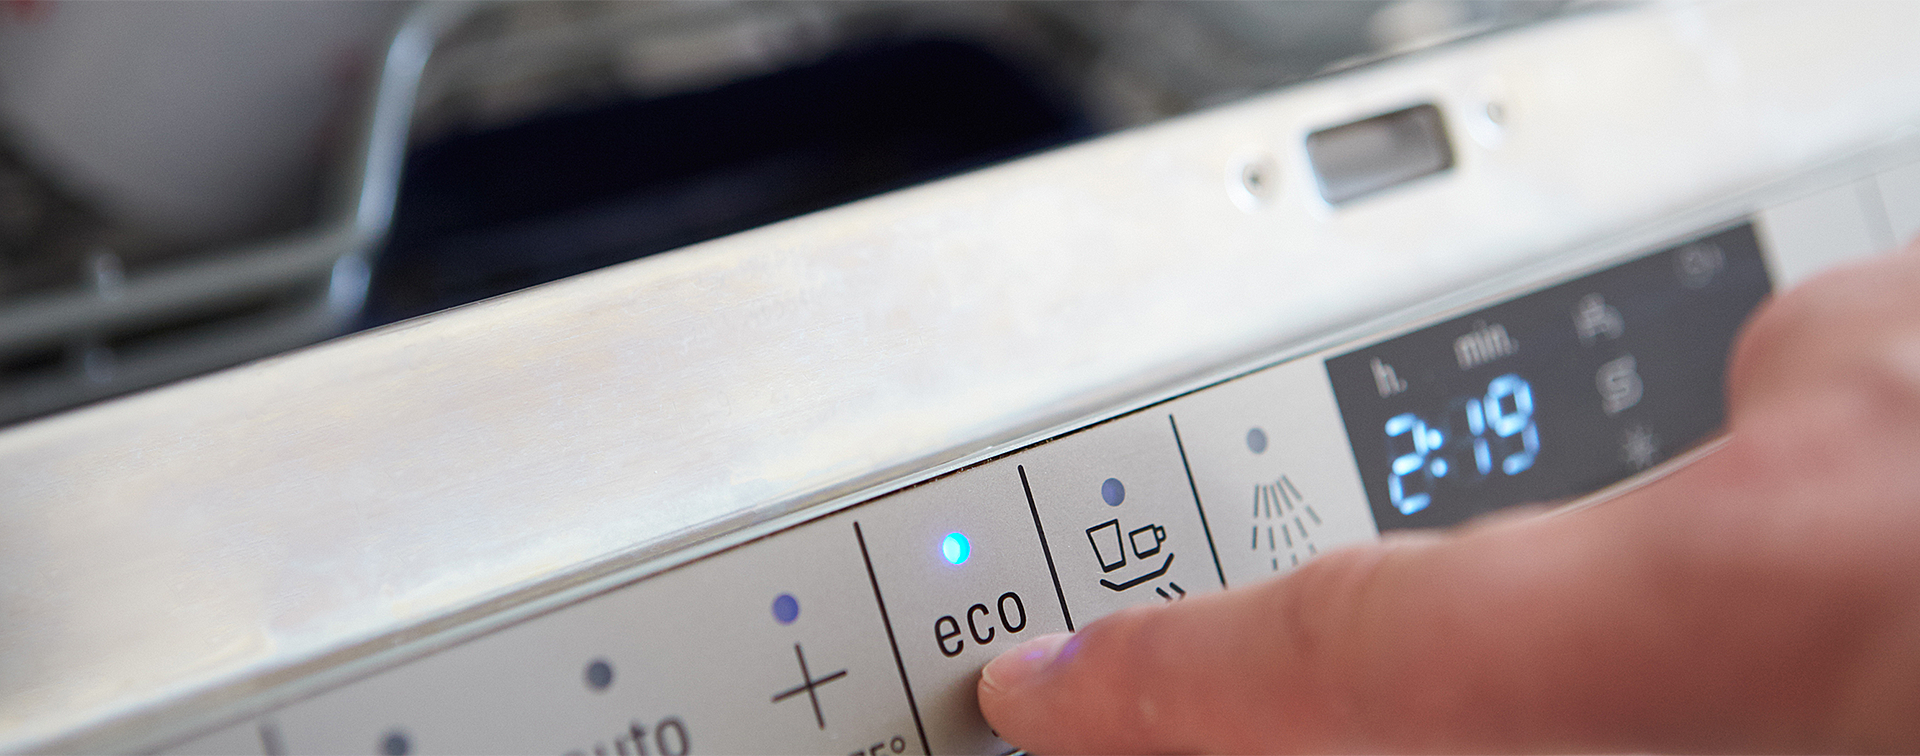 Сколько электричества потребляет посудомойка Beko ds25. Программа эко в посудомоечной машине. Снежинка на посудомойке